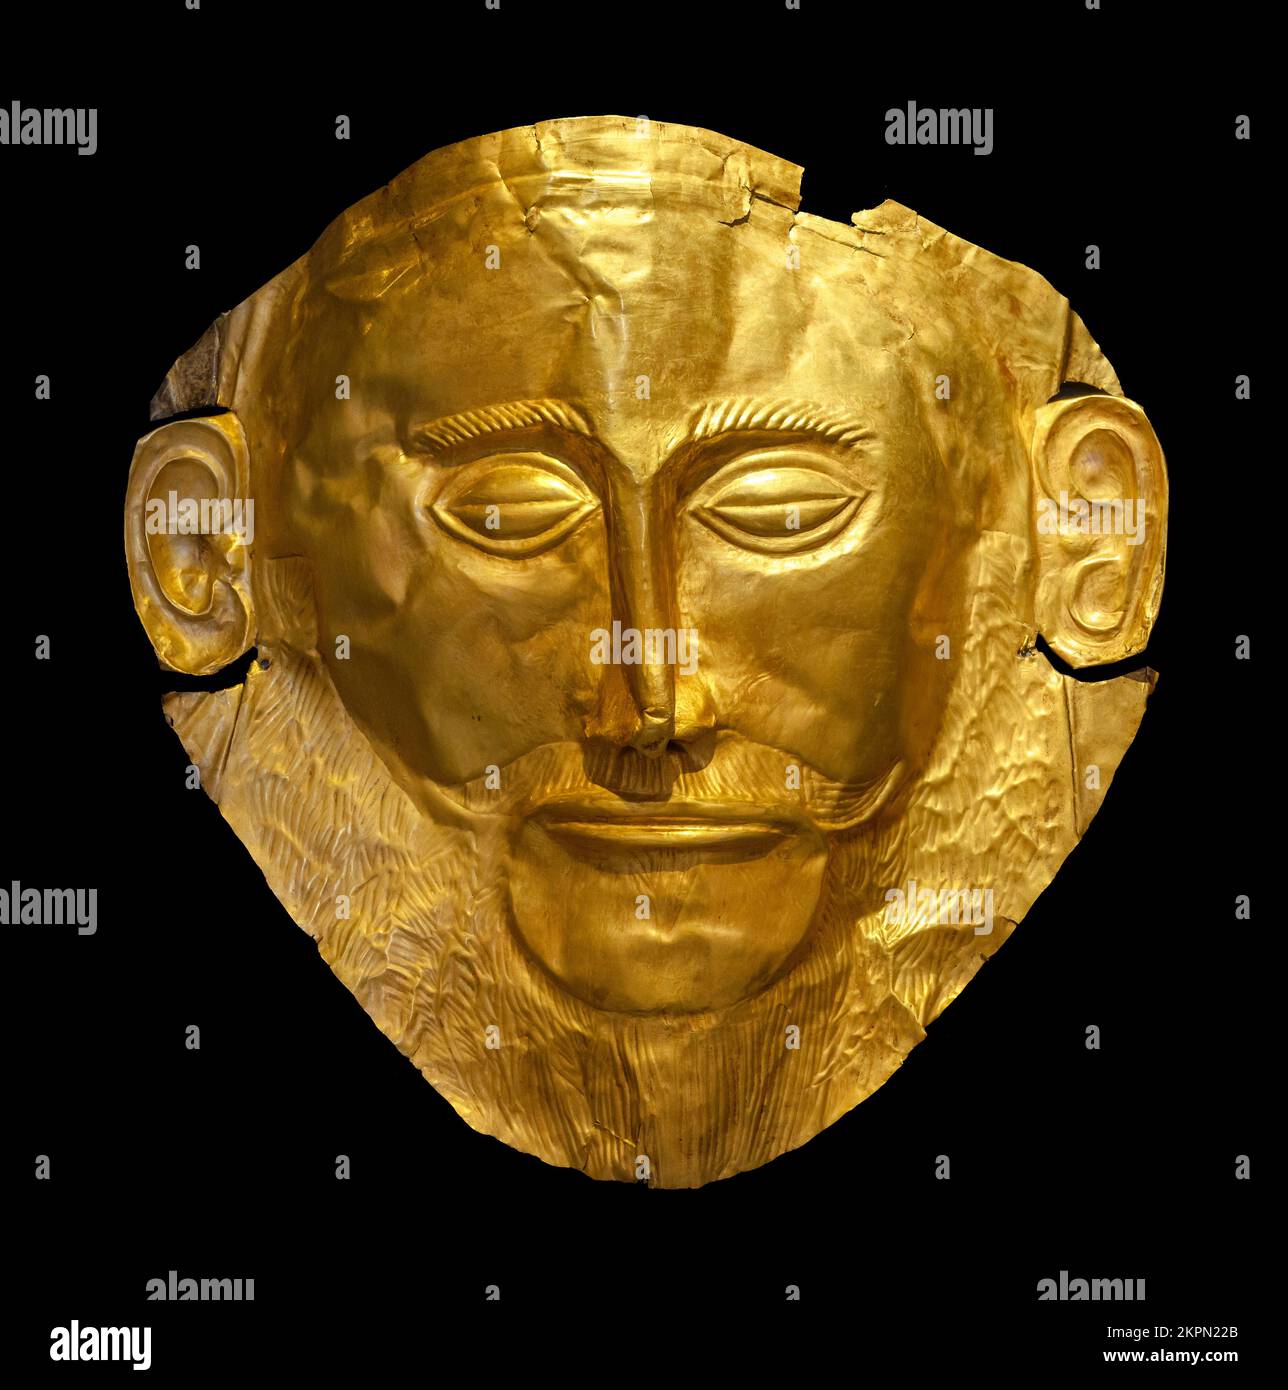 Die Maske von Agamemnon, eine goldene Grabmaske aus Mykene, 16. Jahrhundert v. Chr., Archäologisches Nationalmuseum, Athen, Griechenland Stockfoto